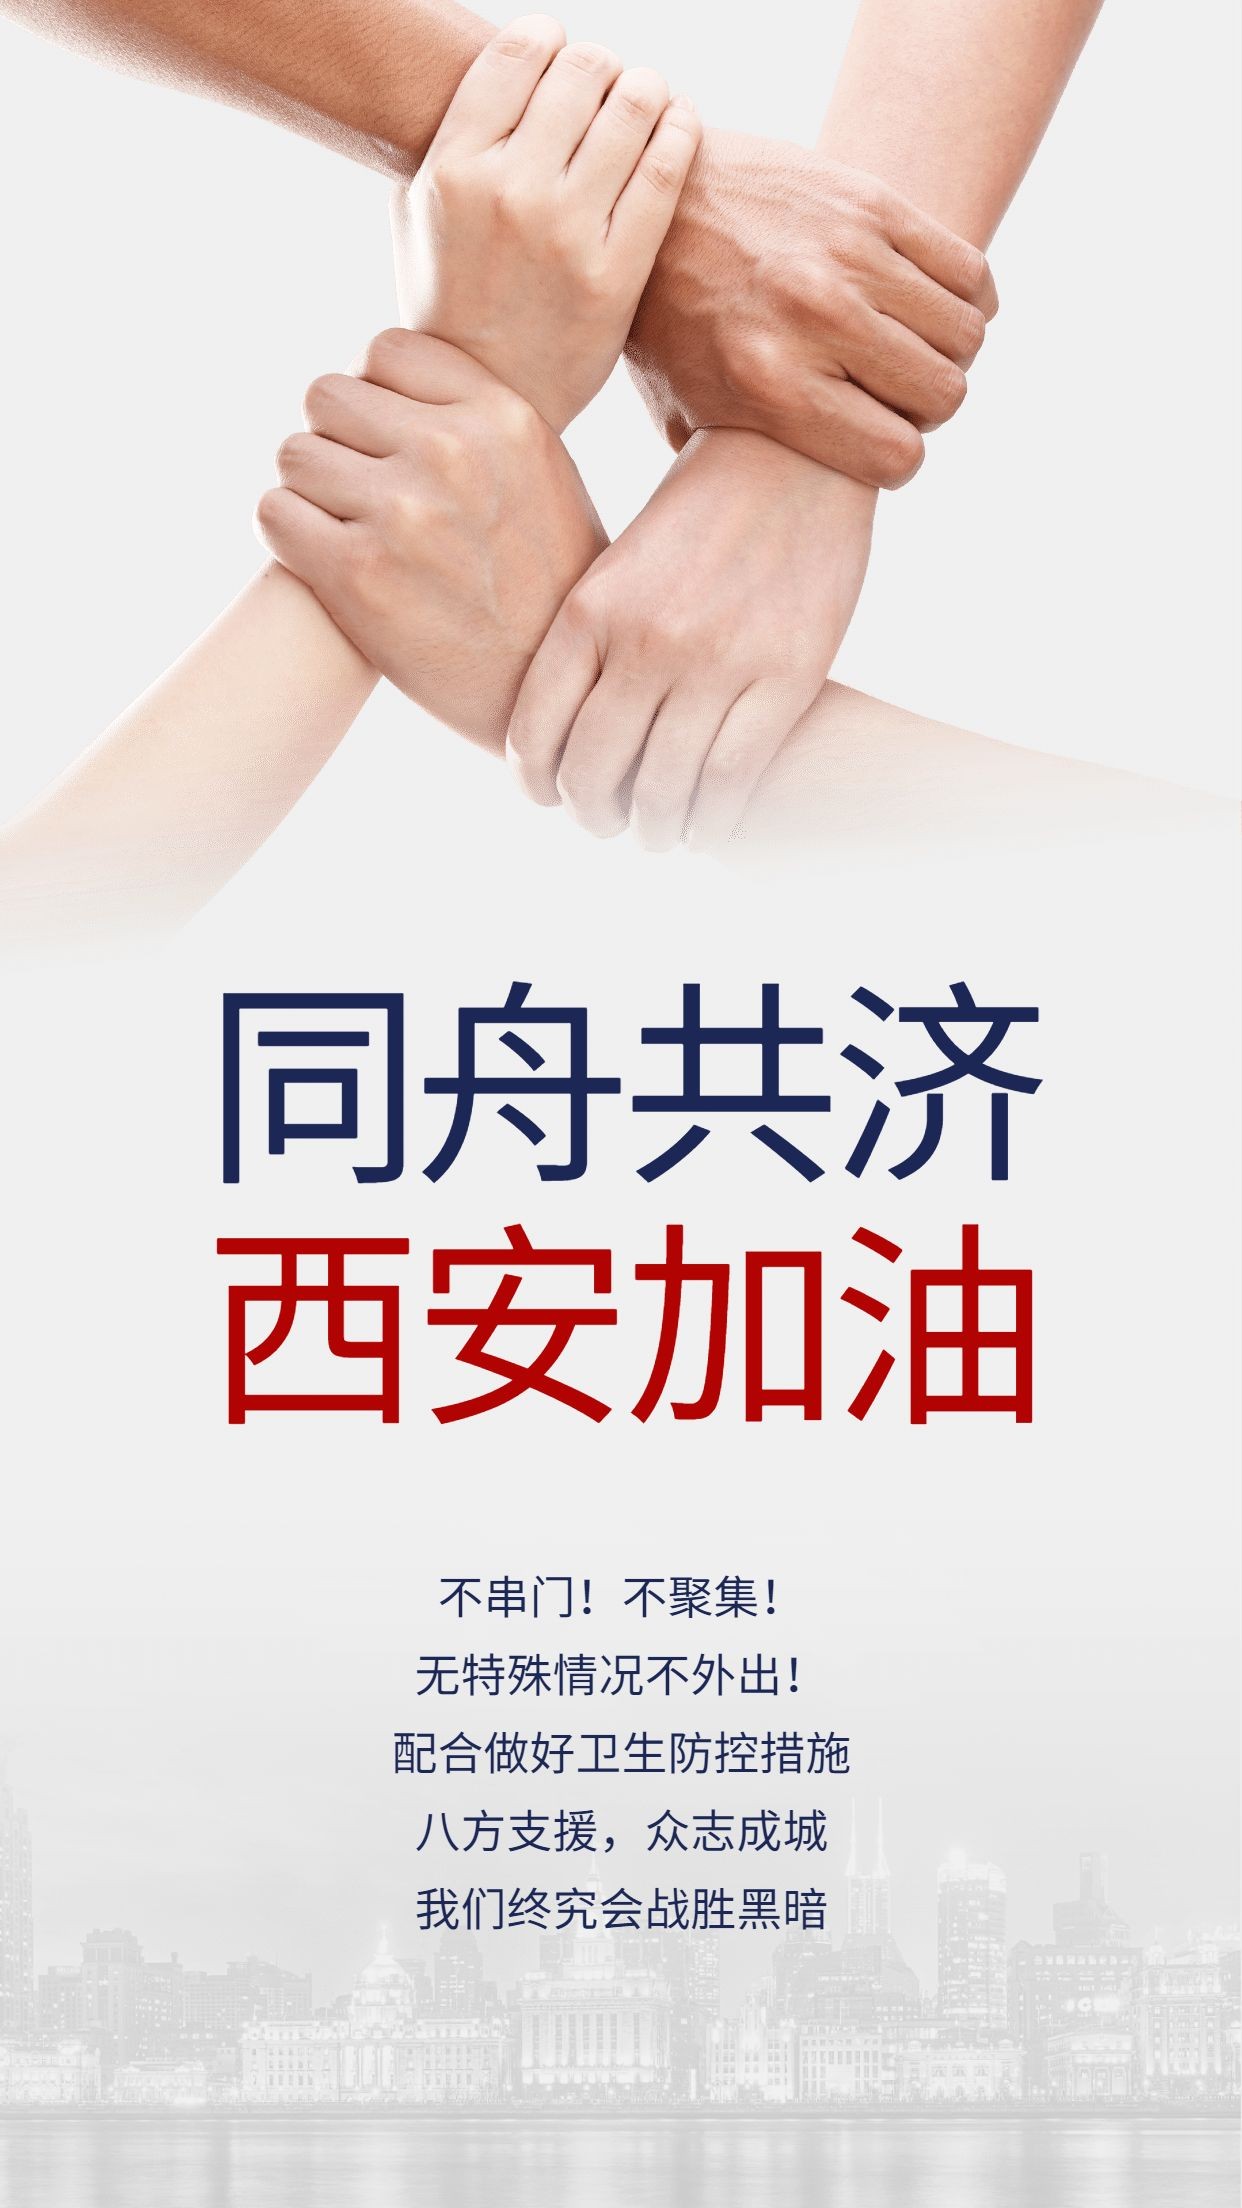 政务党政志愿者活动融媒体手机海报